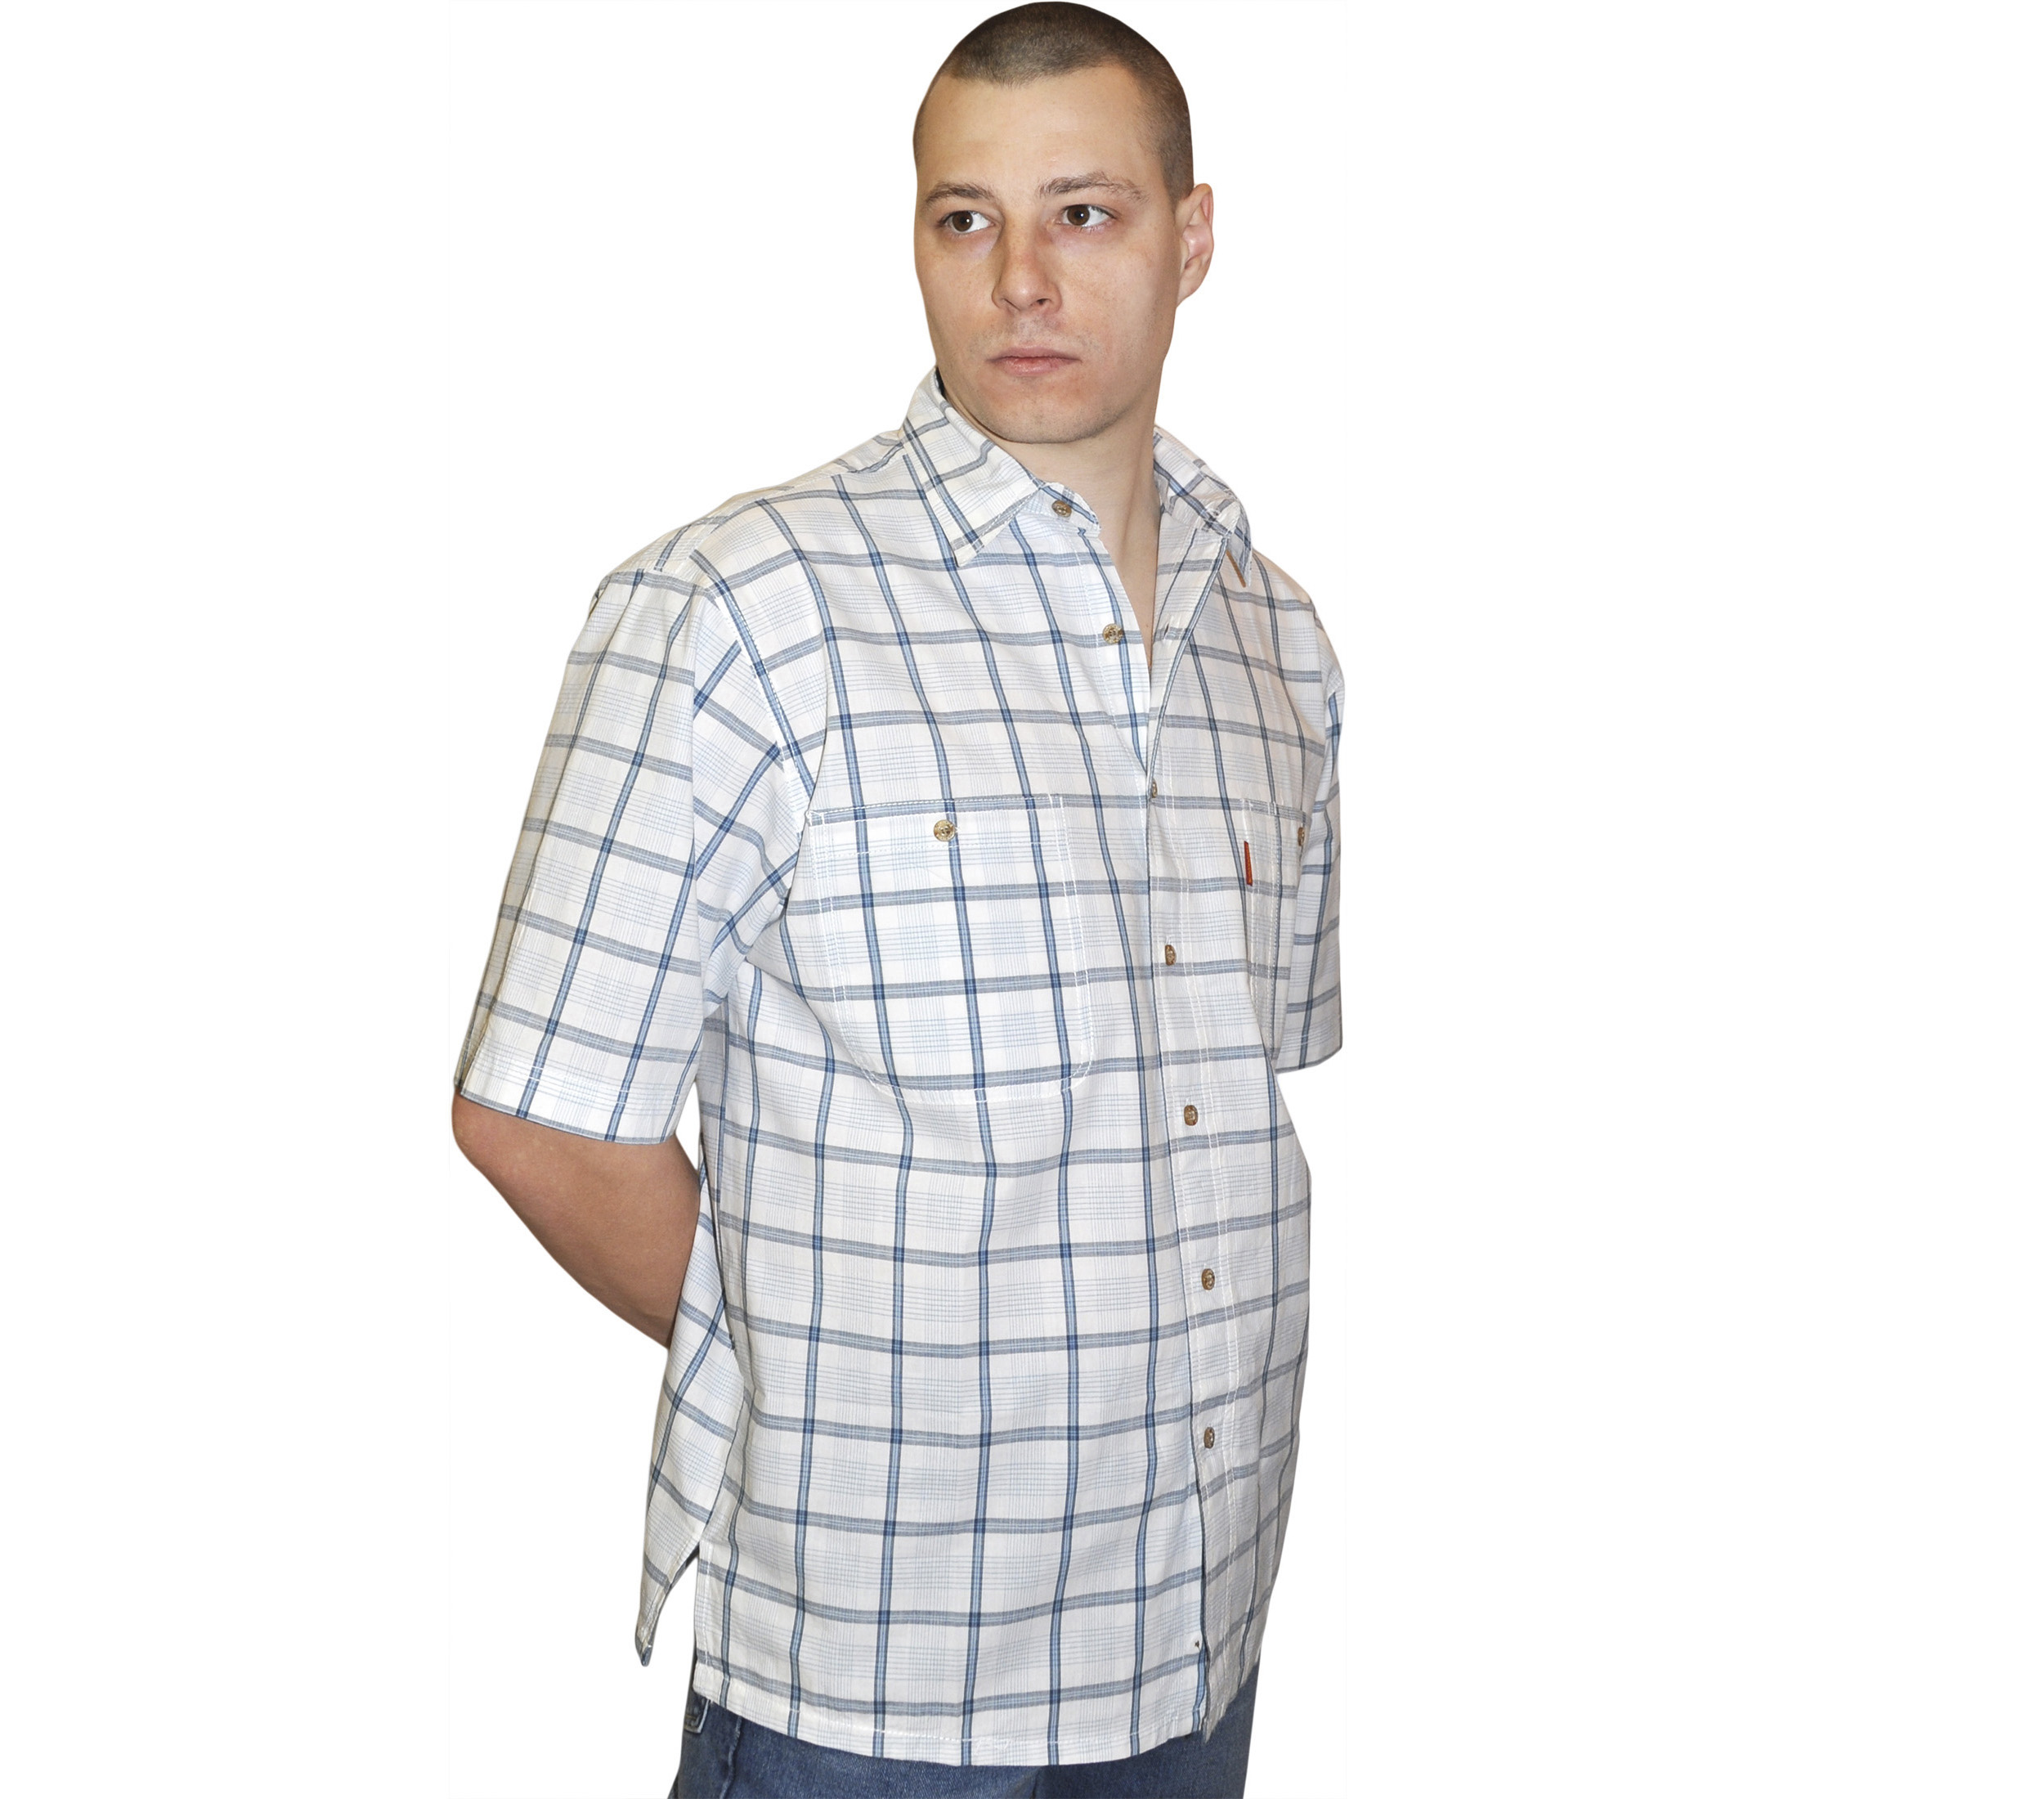 Мужская рубашка с коротким рукавом в бело-серую голубую клетку. 